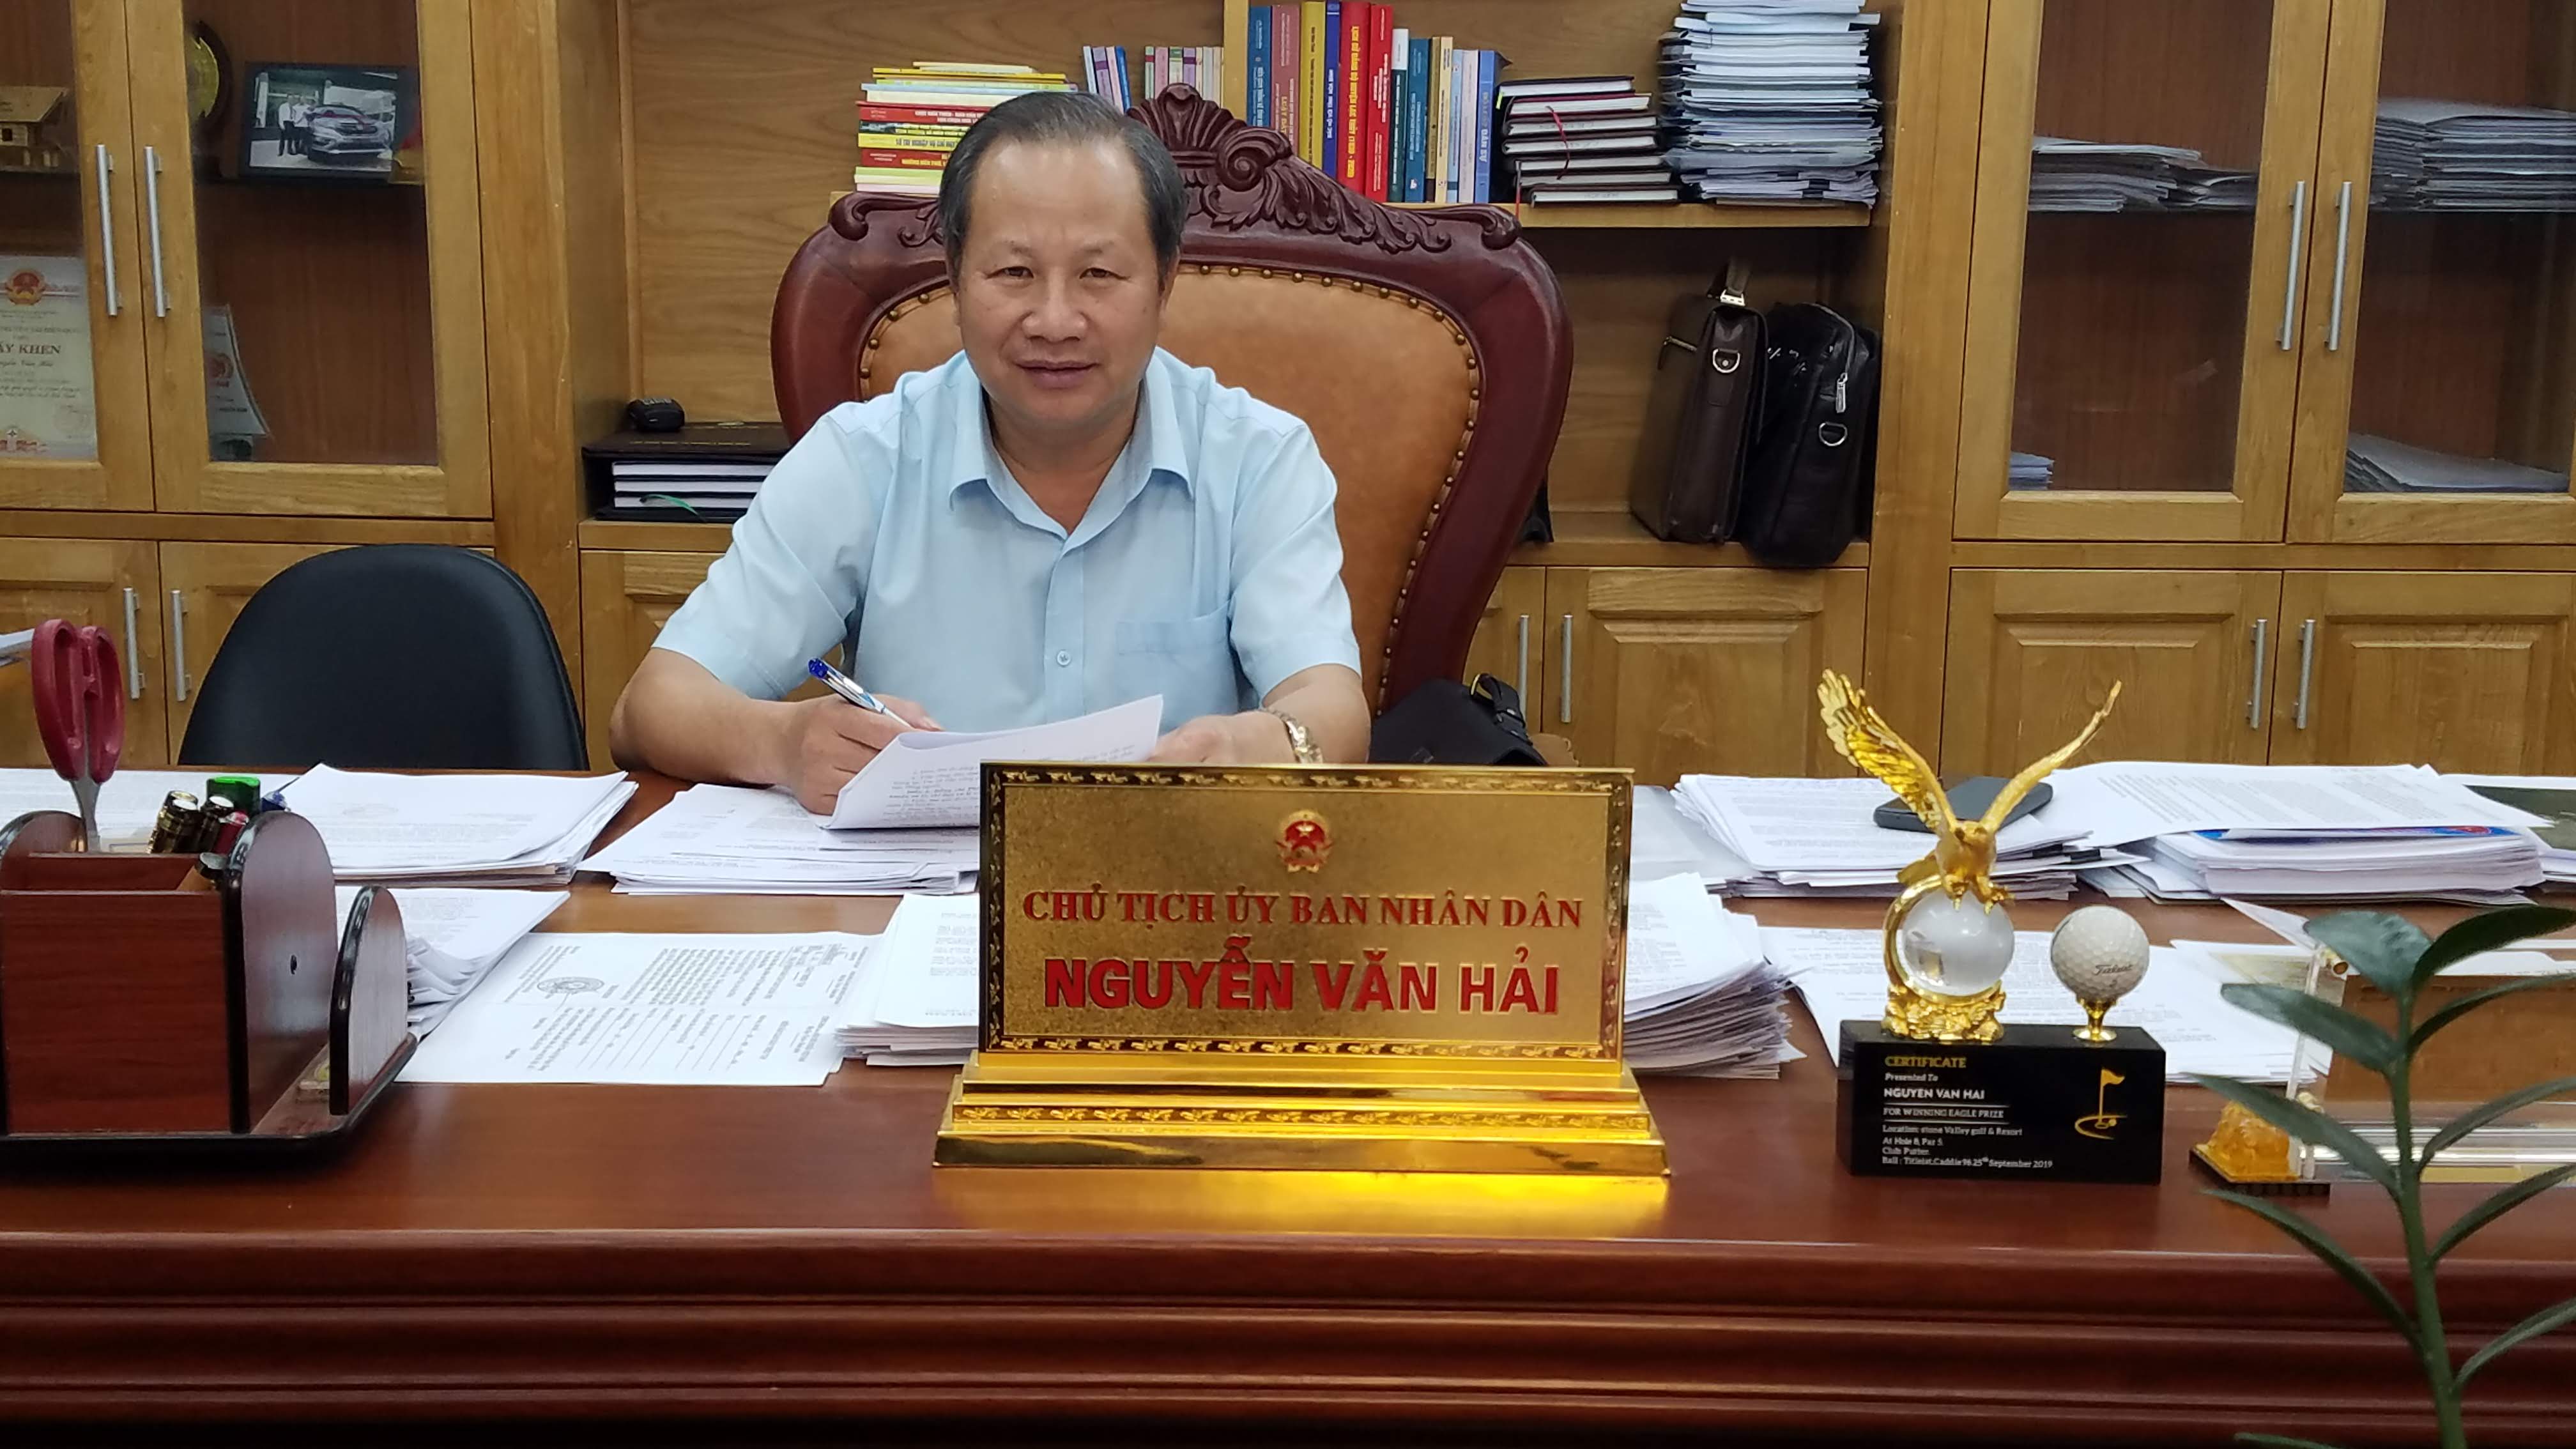 Chủ tịch UBND huyện Lạc Thủy Nguyễn Văn Hải, “ Huyện phấn đấu sớm đạt chuẩn nông thôn mới để phát triển kinh tế - xã hội toàn diện, bền vững, vươn lên tầm cao mới”.jpg